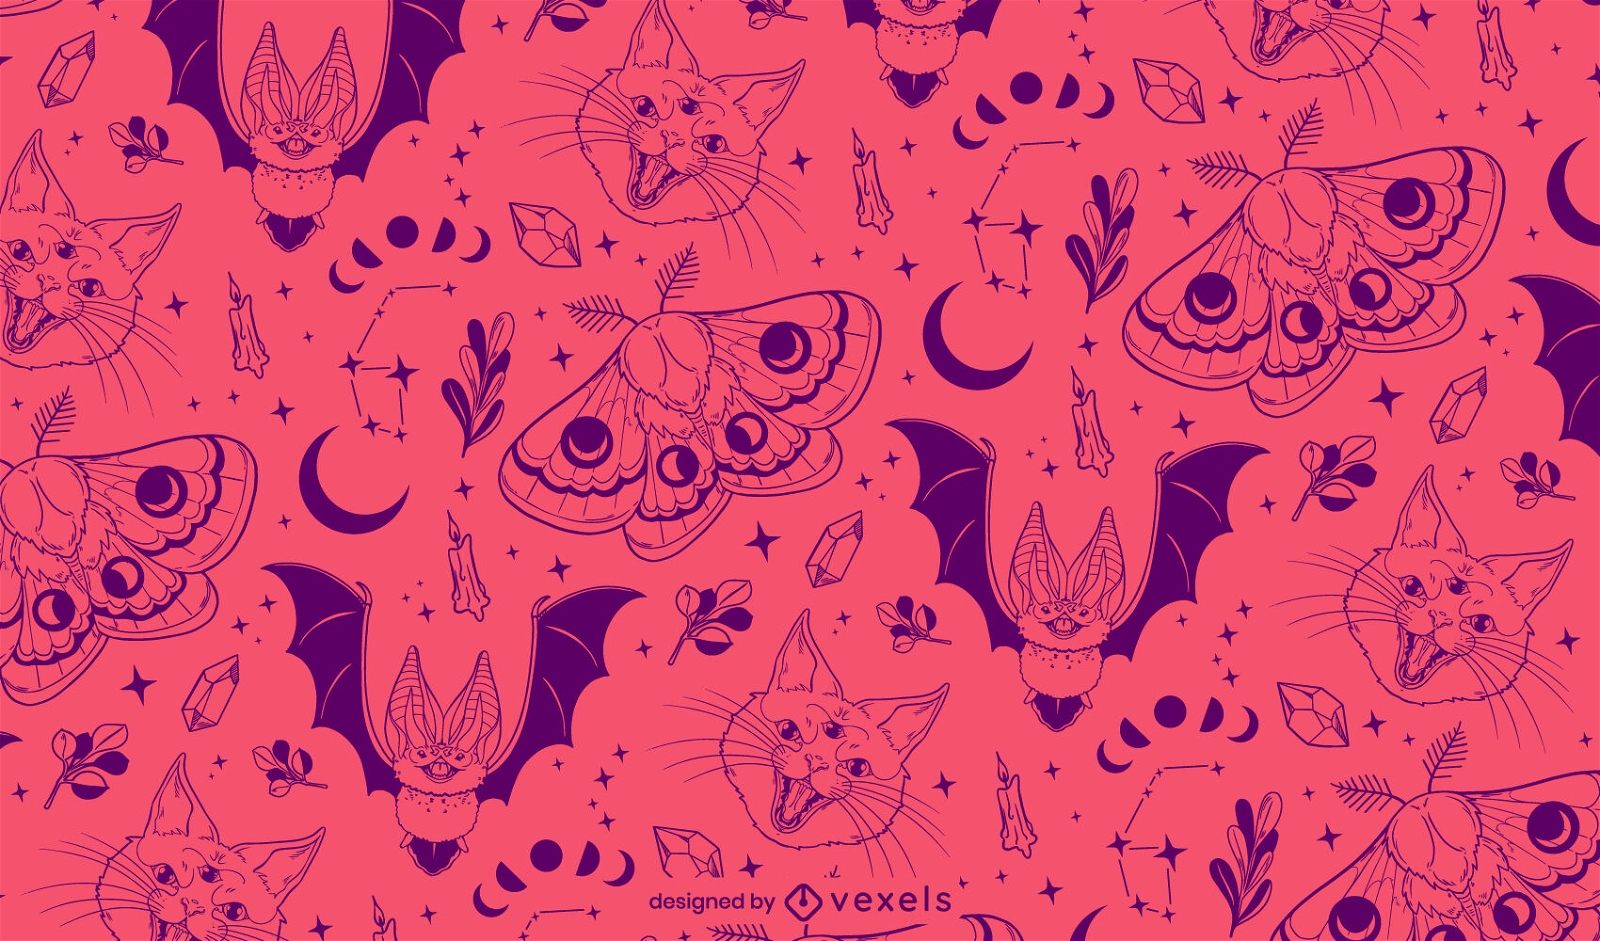 Witch animals Halloween pattern design